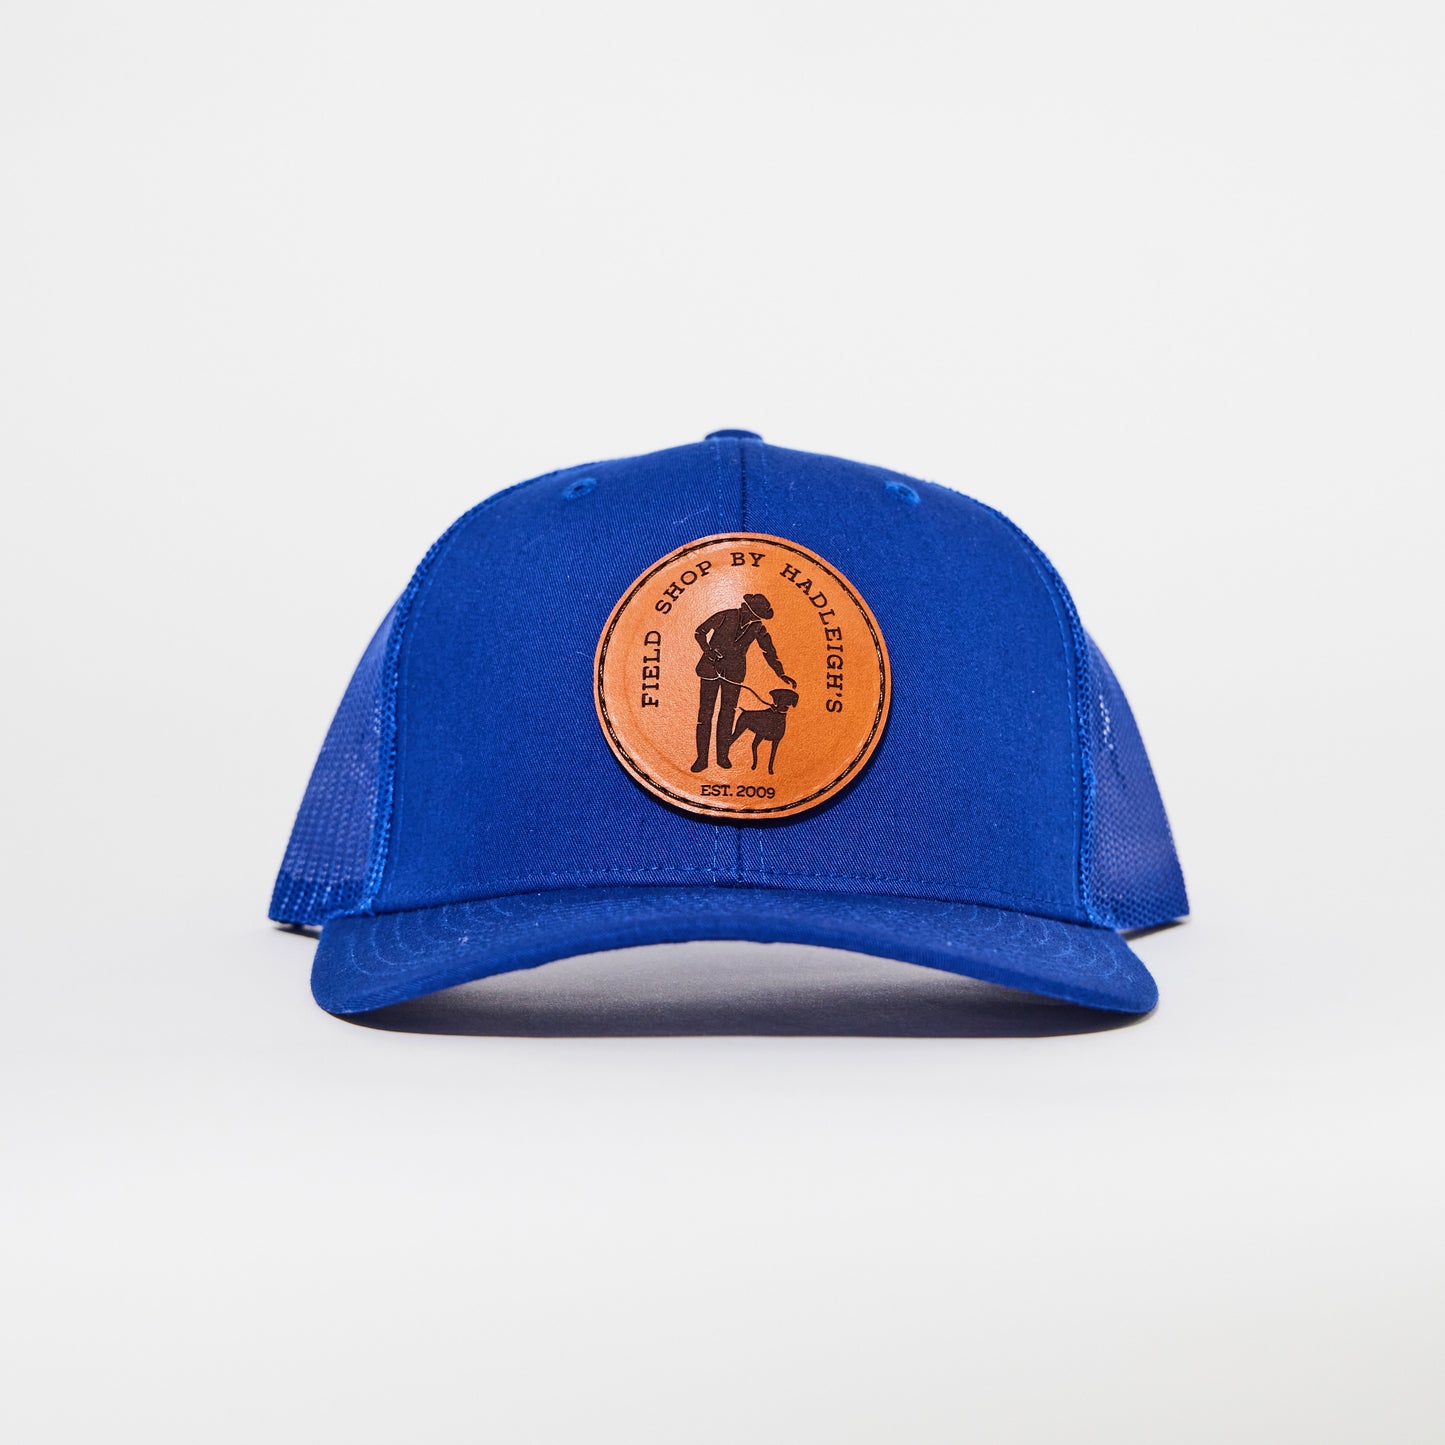 Field Shop Sporting Cap in Cobalt